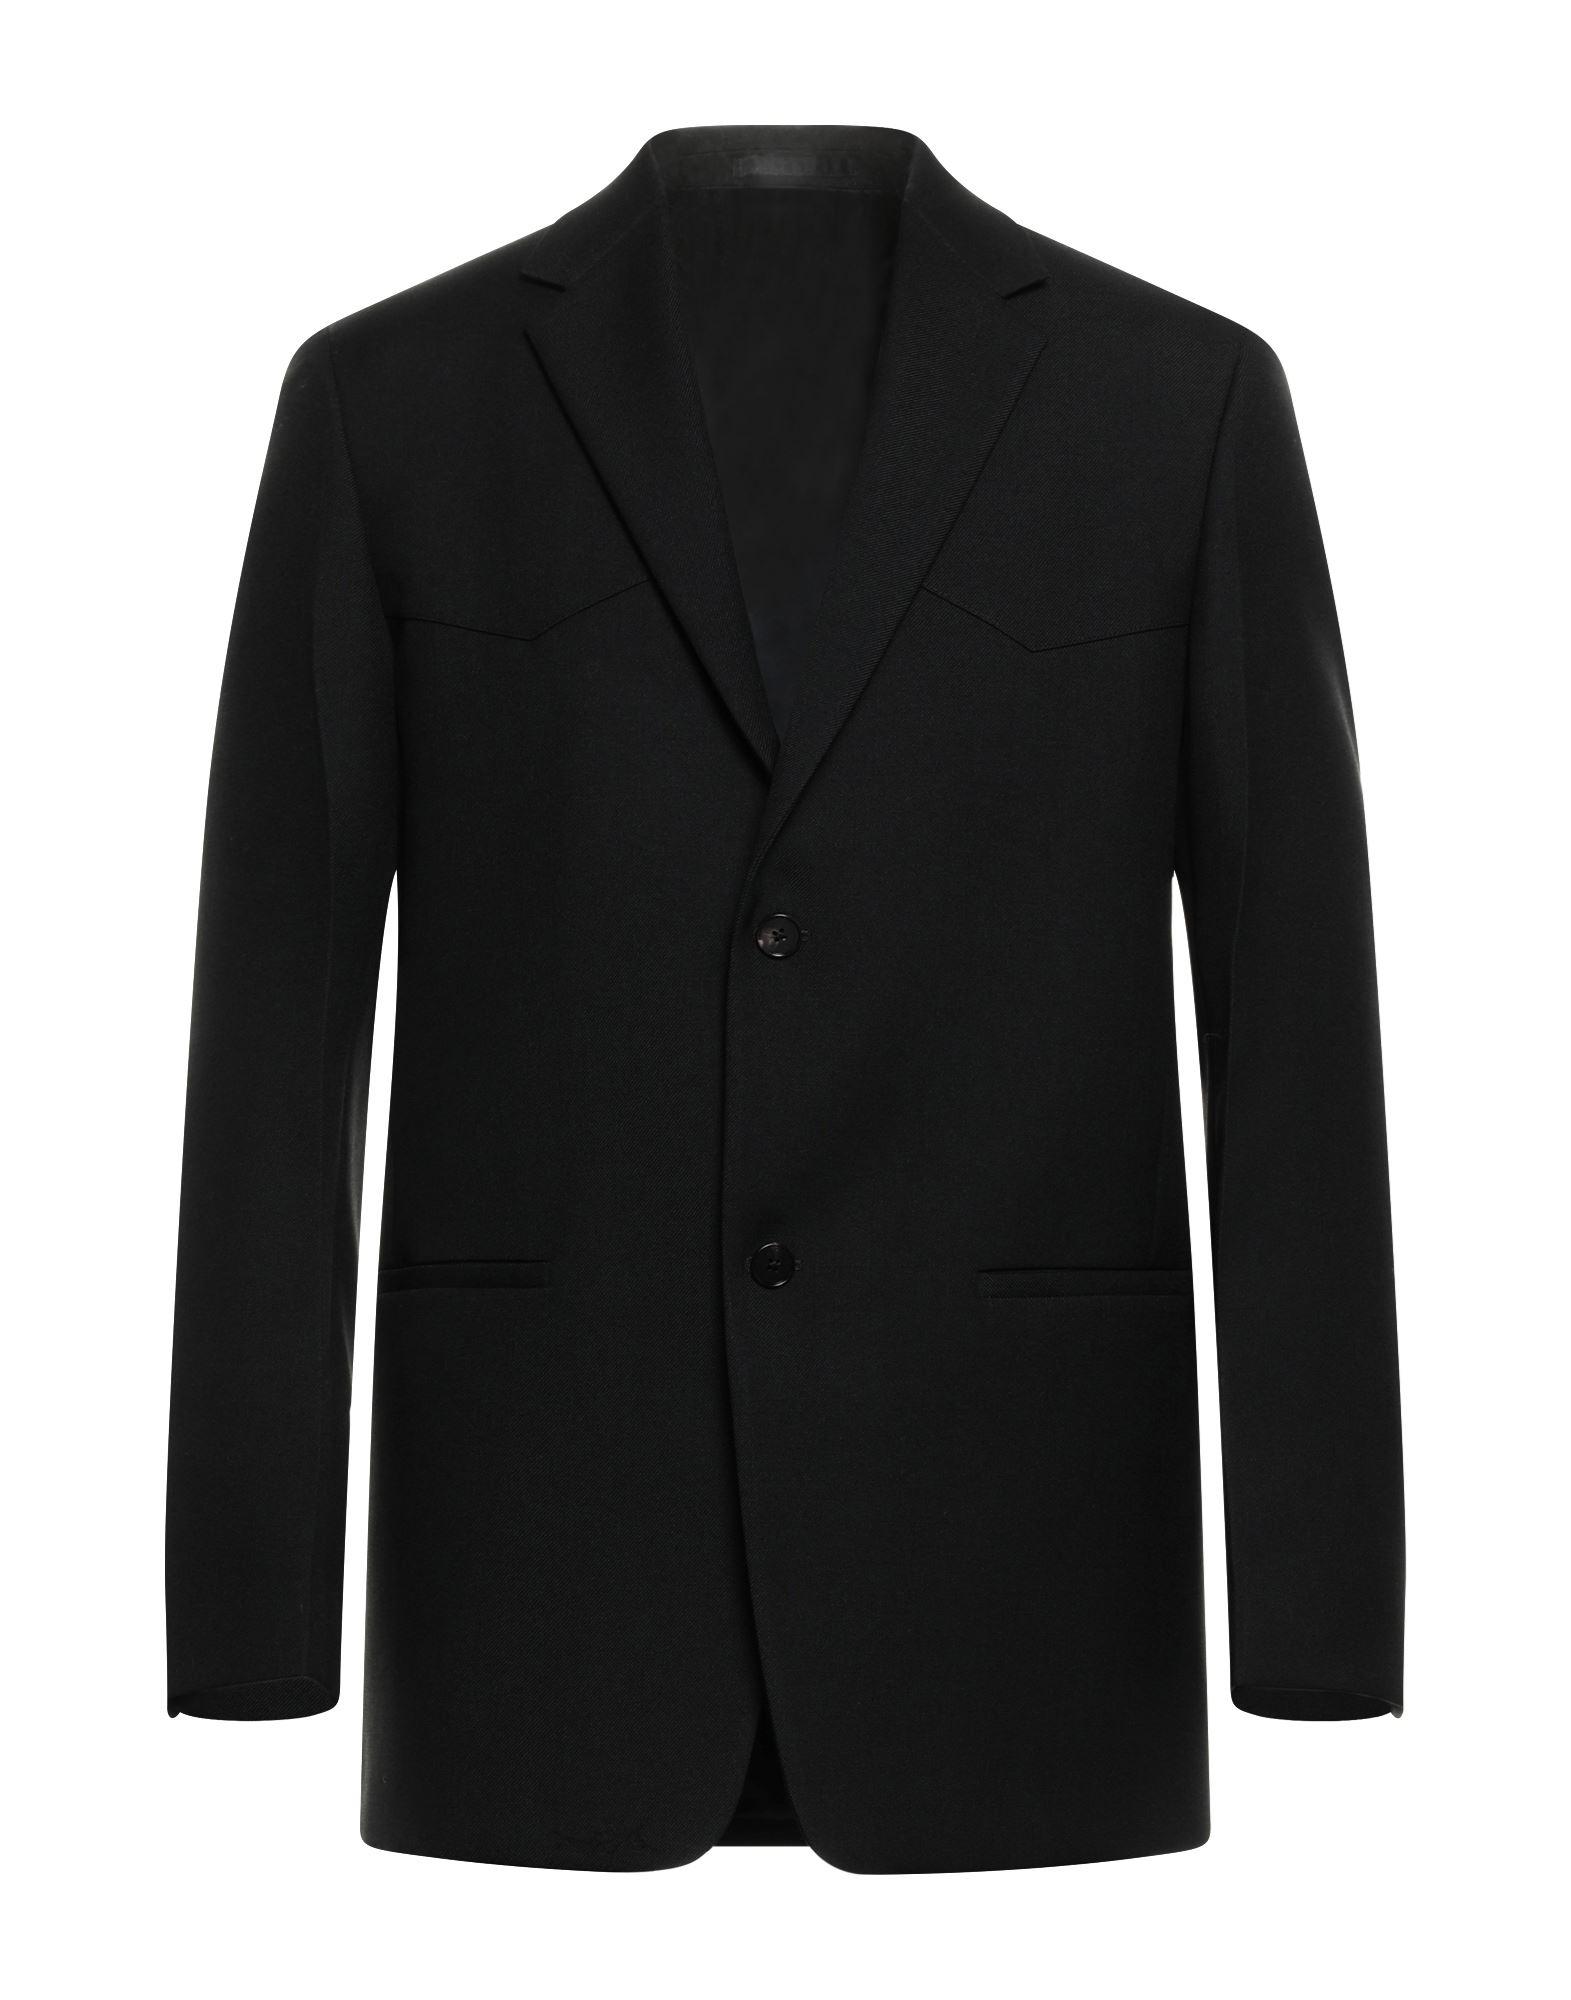 Veste bomber à fermeture zippée Coton Sacai pour homme en coloris Noir Homme Vêtements Vestes blousons blazers Vestes casual 